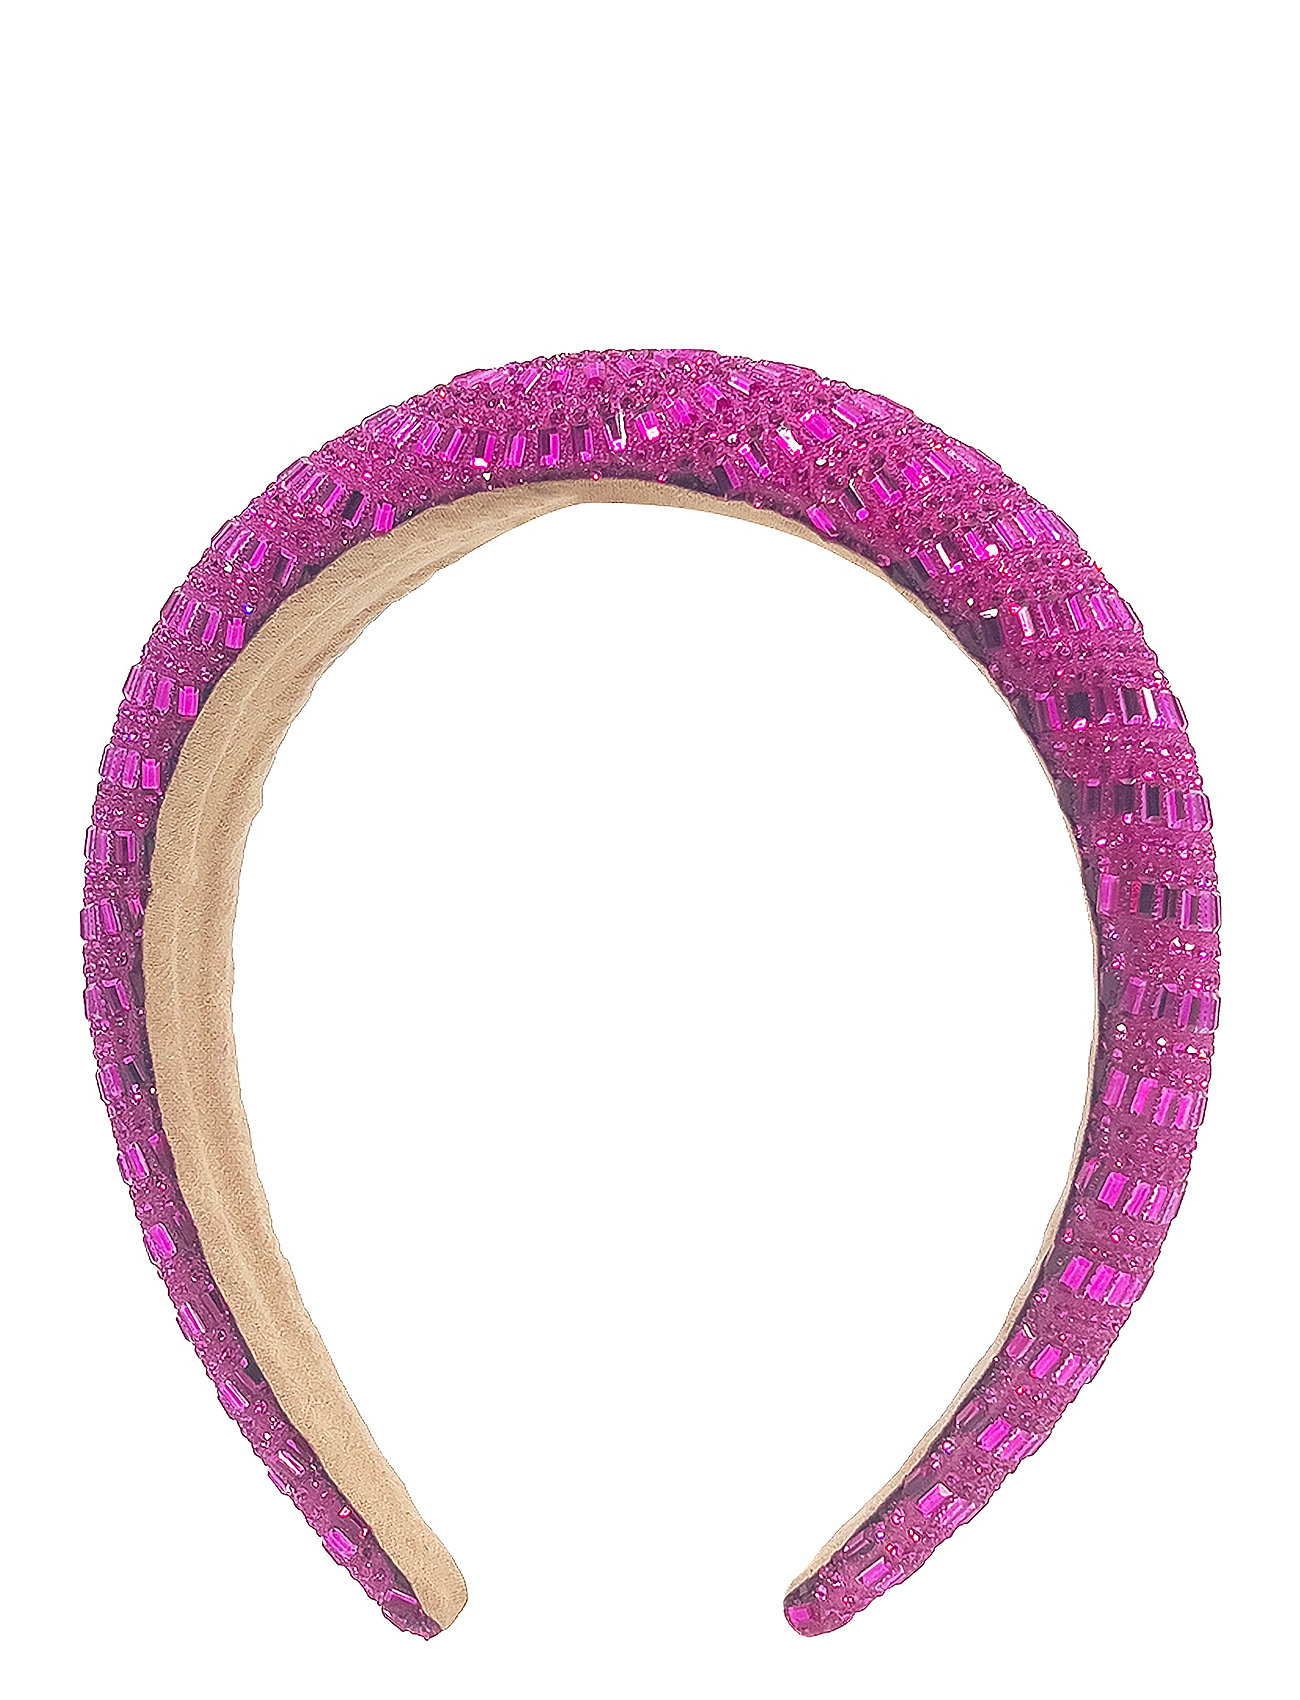 Mira Diadema Pink Accessories Hair Accessories Hair Band Pink Pipol's Bazaar